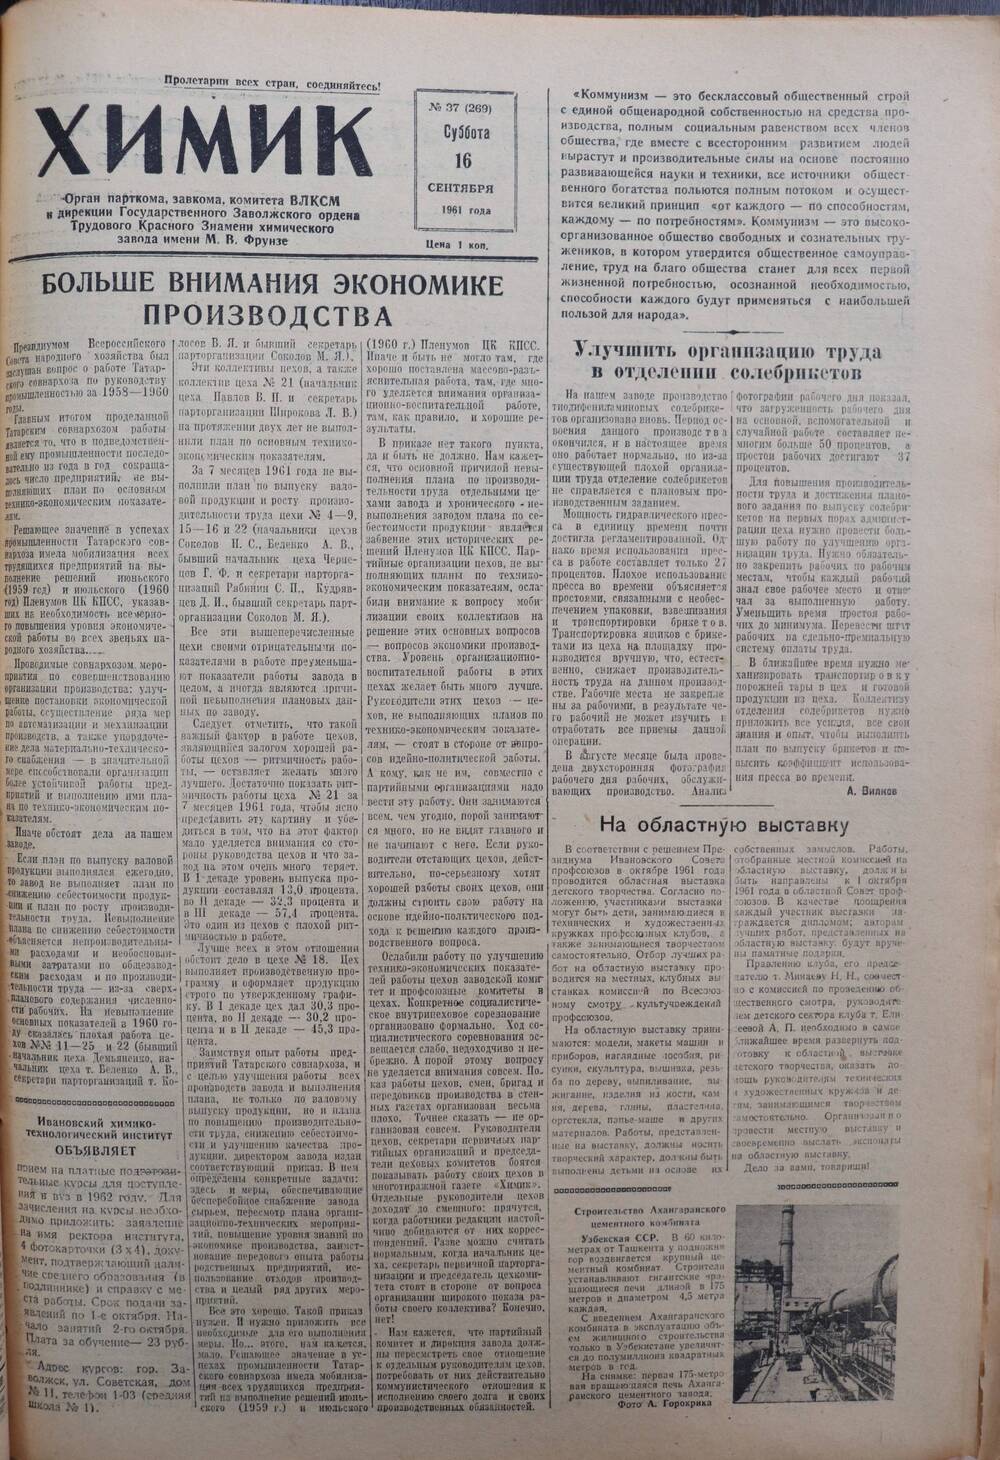 Газета «Химик» № 37 от 16 сентября 1961 года.